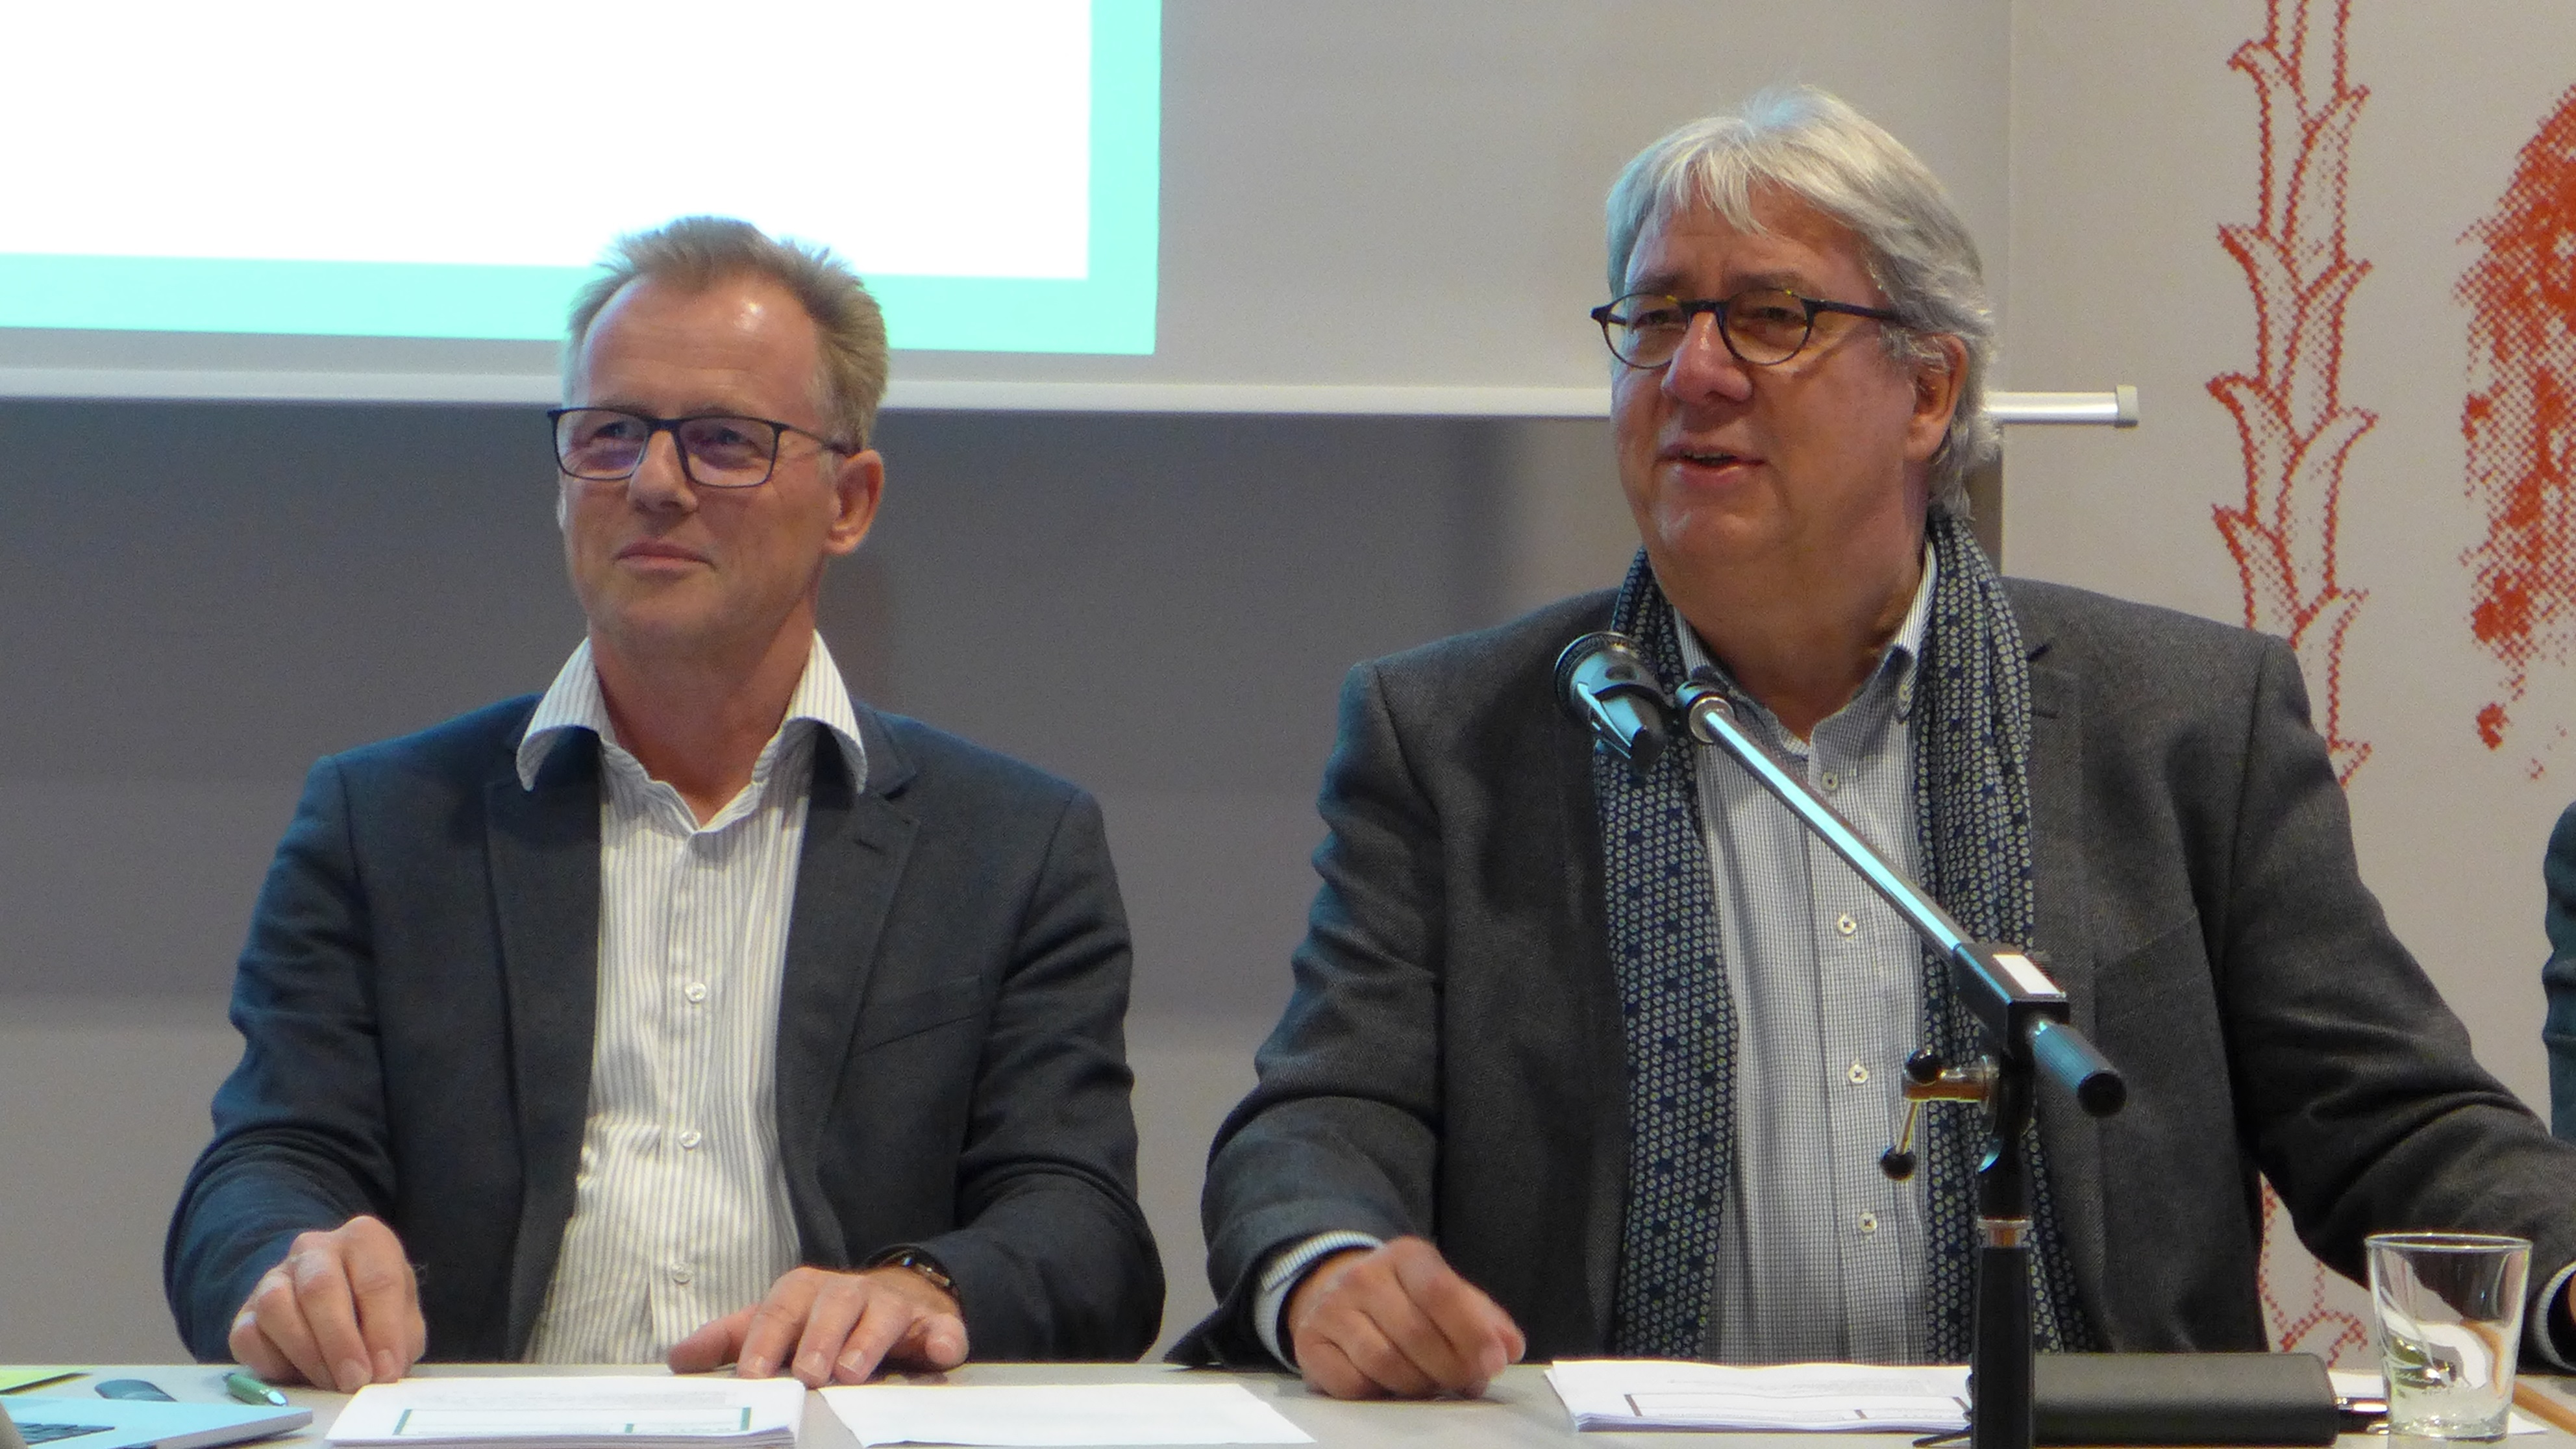 Die beiden Gründungspräsidenten des Bundesverbandes Musikunterricht e.V. Dr. Michael Pabst-Krueger und Prof. Dr. Ortwin Nimczik bei der Leitung der Bundesmitgliederversammlung am 29. September 2018 in Hannover